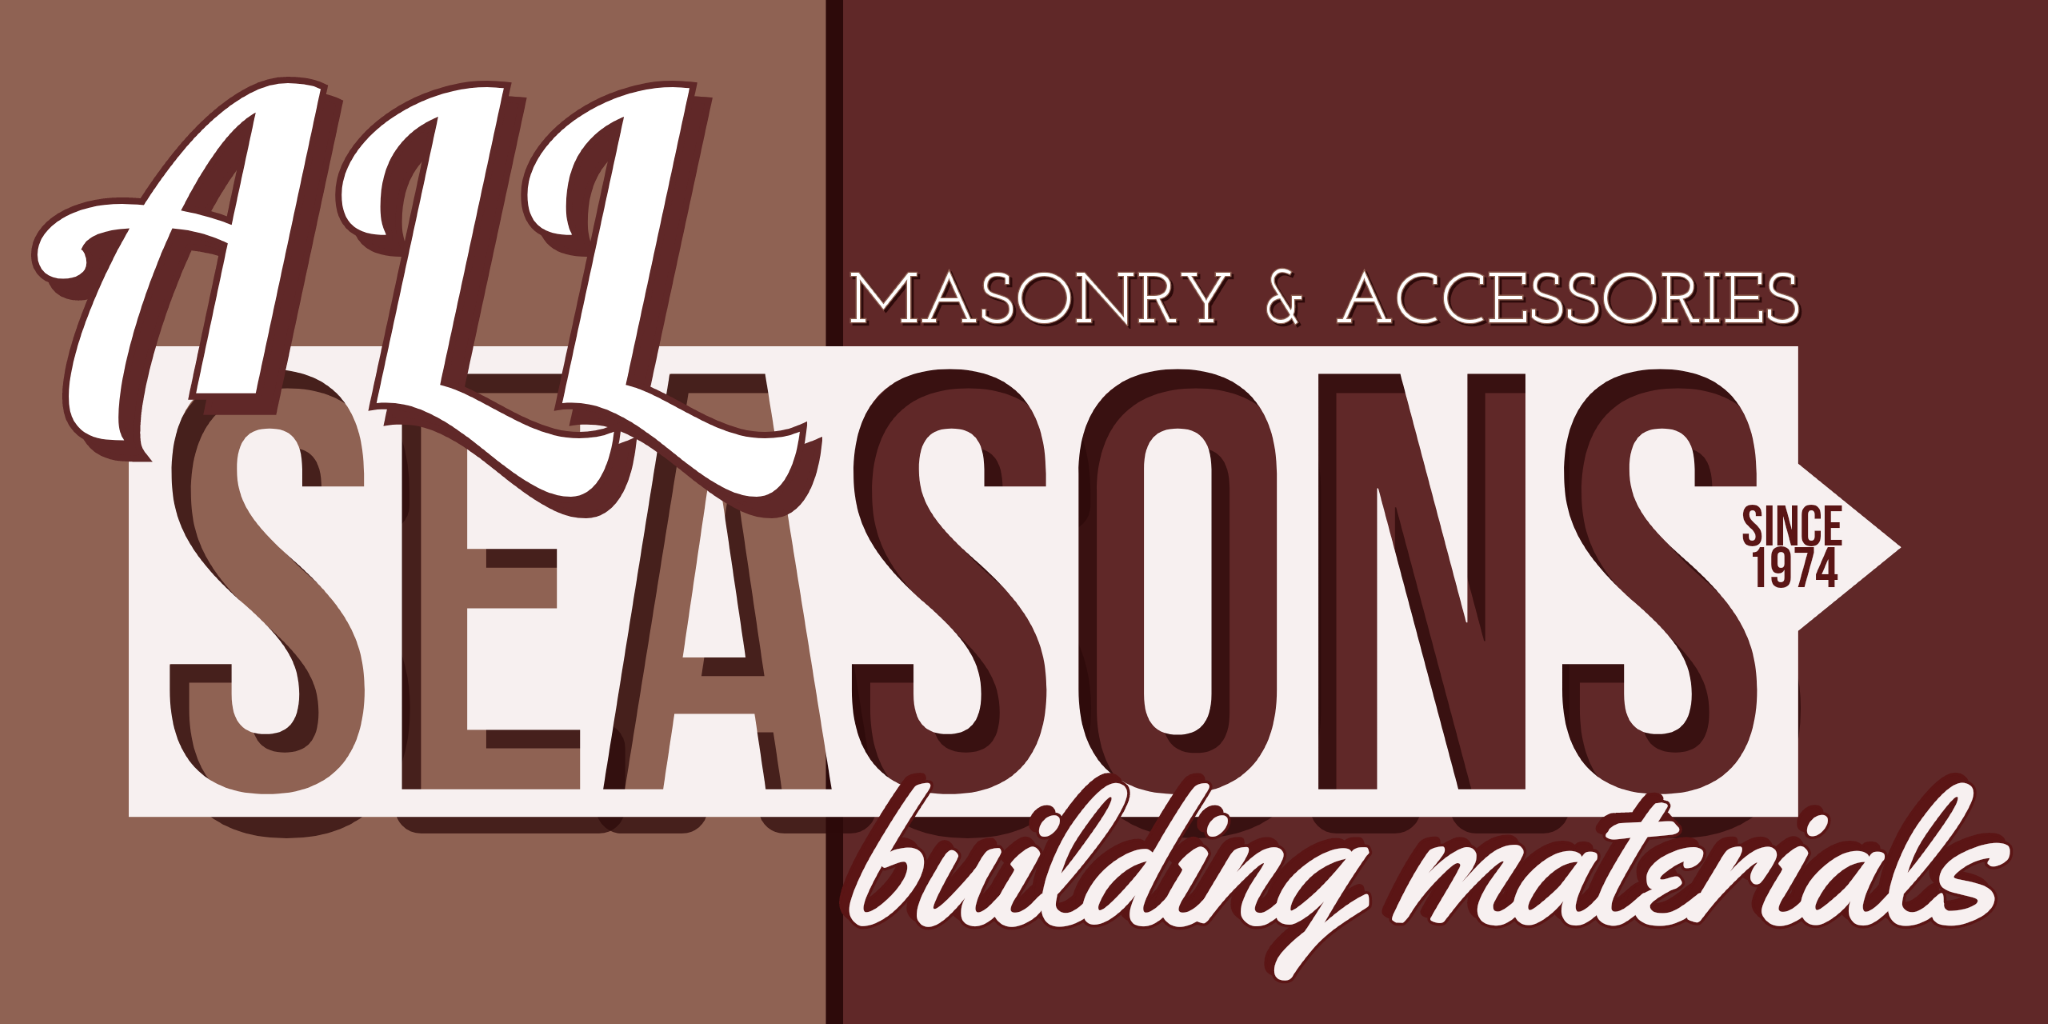 All Seasons Building Materials Company, Inc.